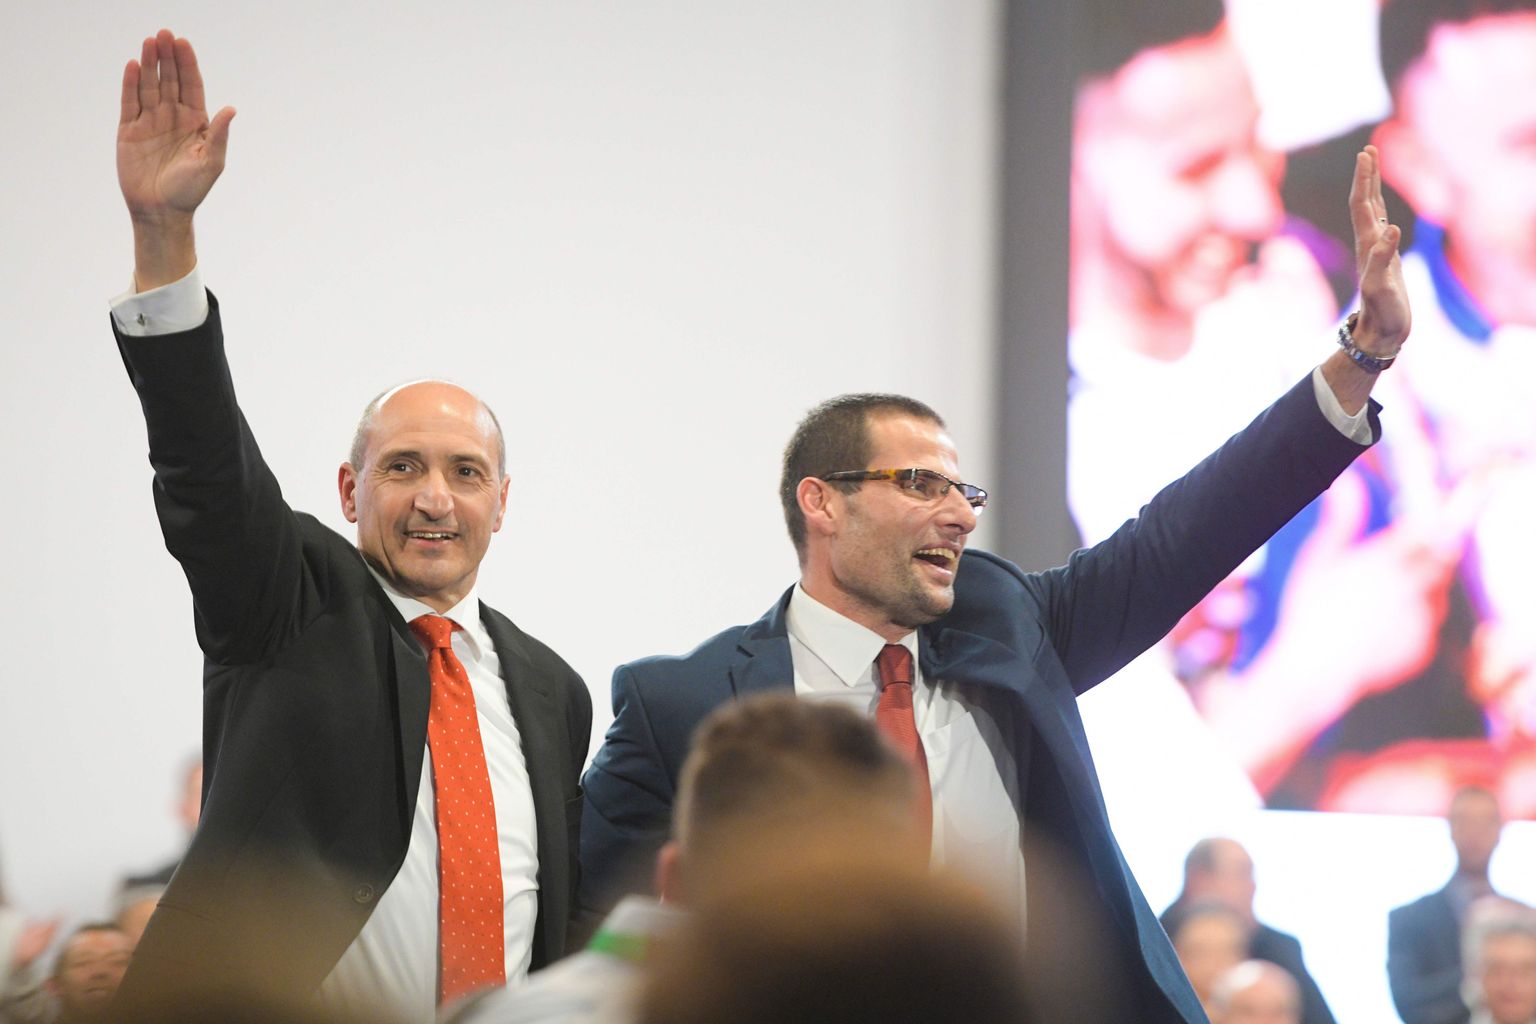 Malta valitseva Tööpartei juhiks valitud Robert Abela (paremal) laupäeva õhtul Paolas parteikongressil. Temast saab peagi Malta uus peaminister.